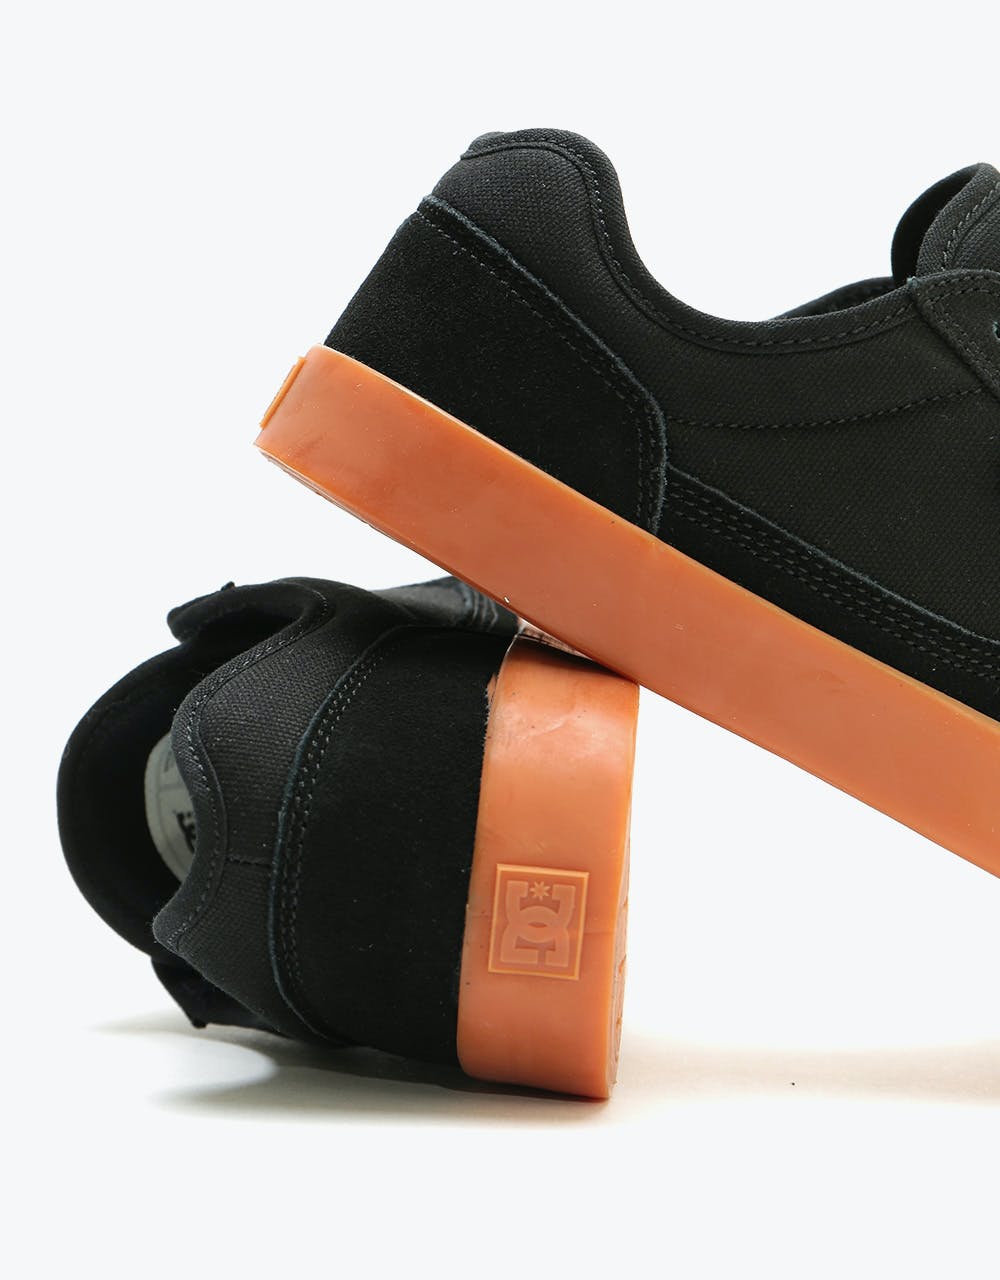 DC Tonik Skate Shoes - Black/Black/Gum